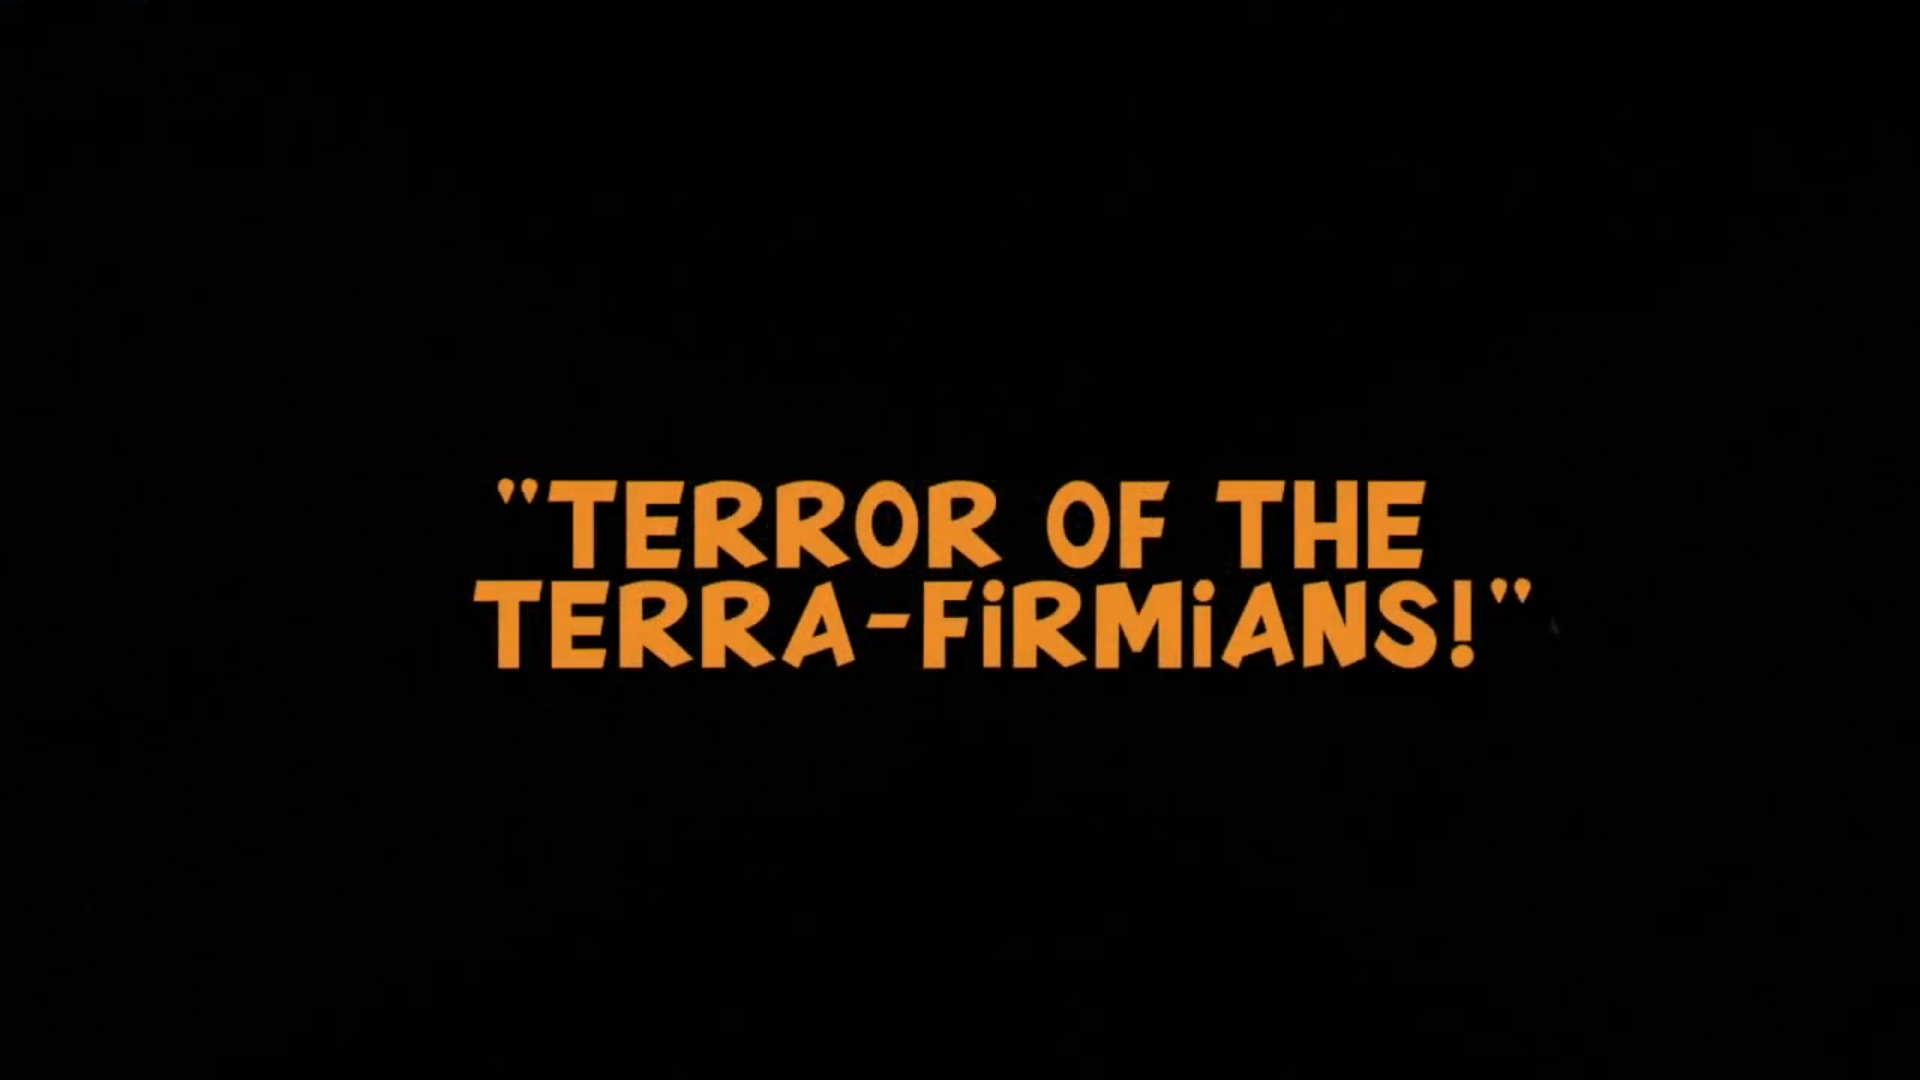 5 серия 1 сезона Утиные истории Terror of the Terra-firmians!